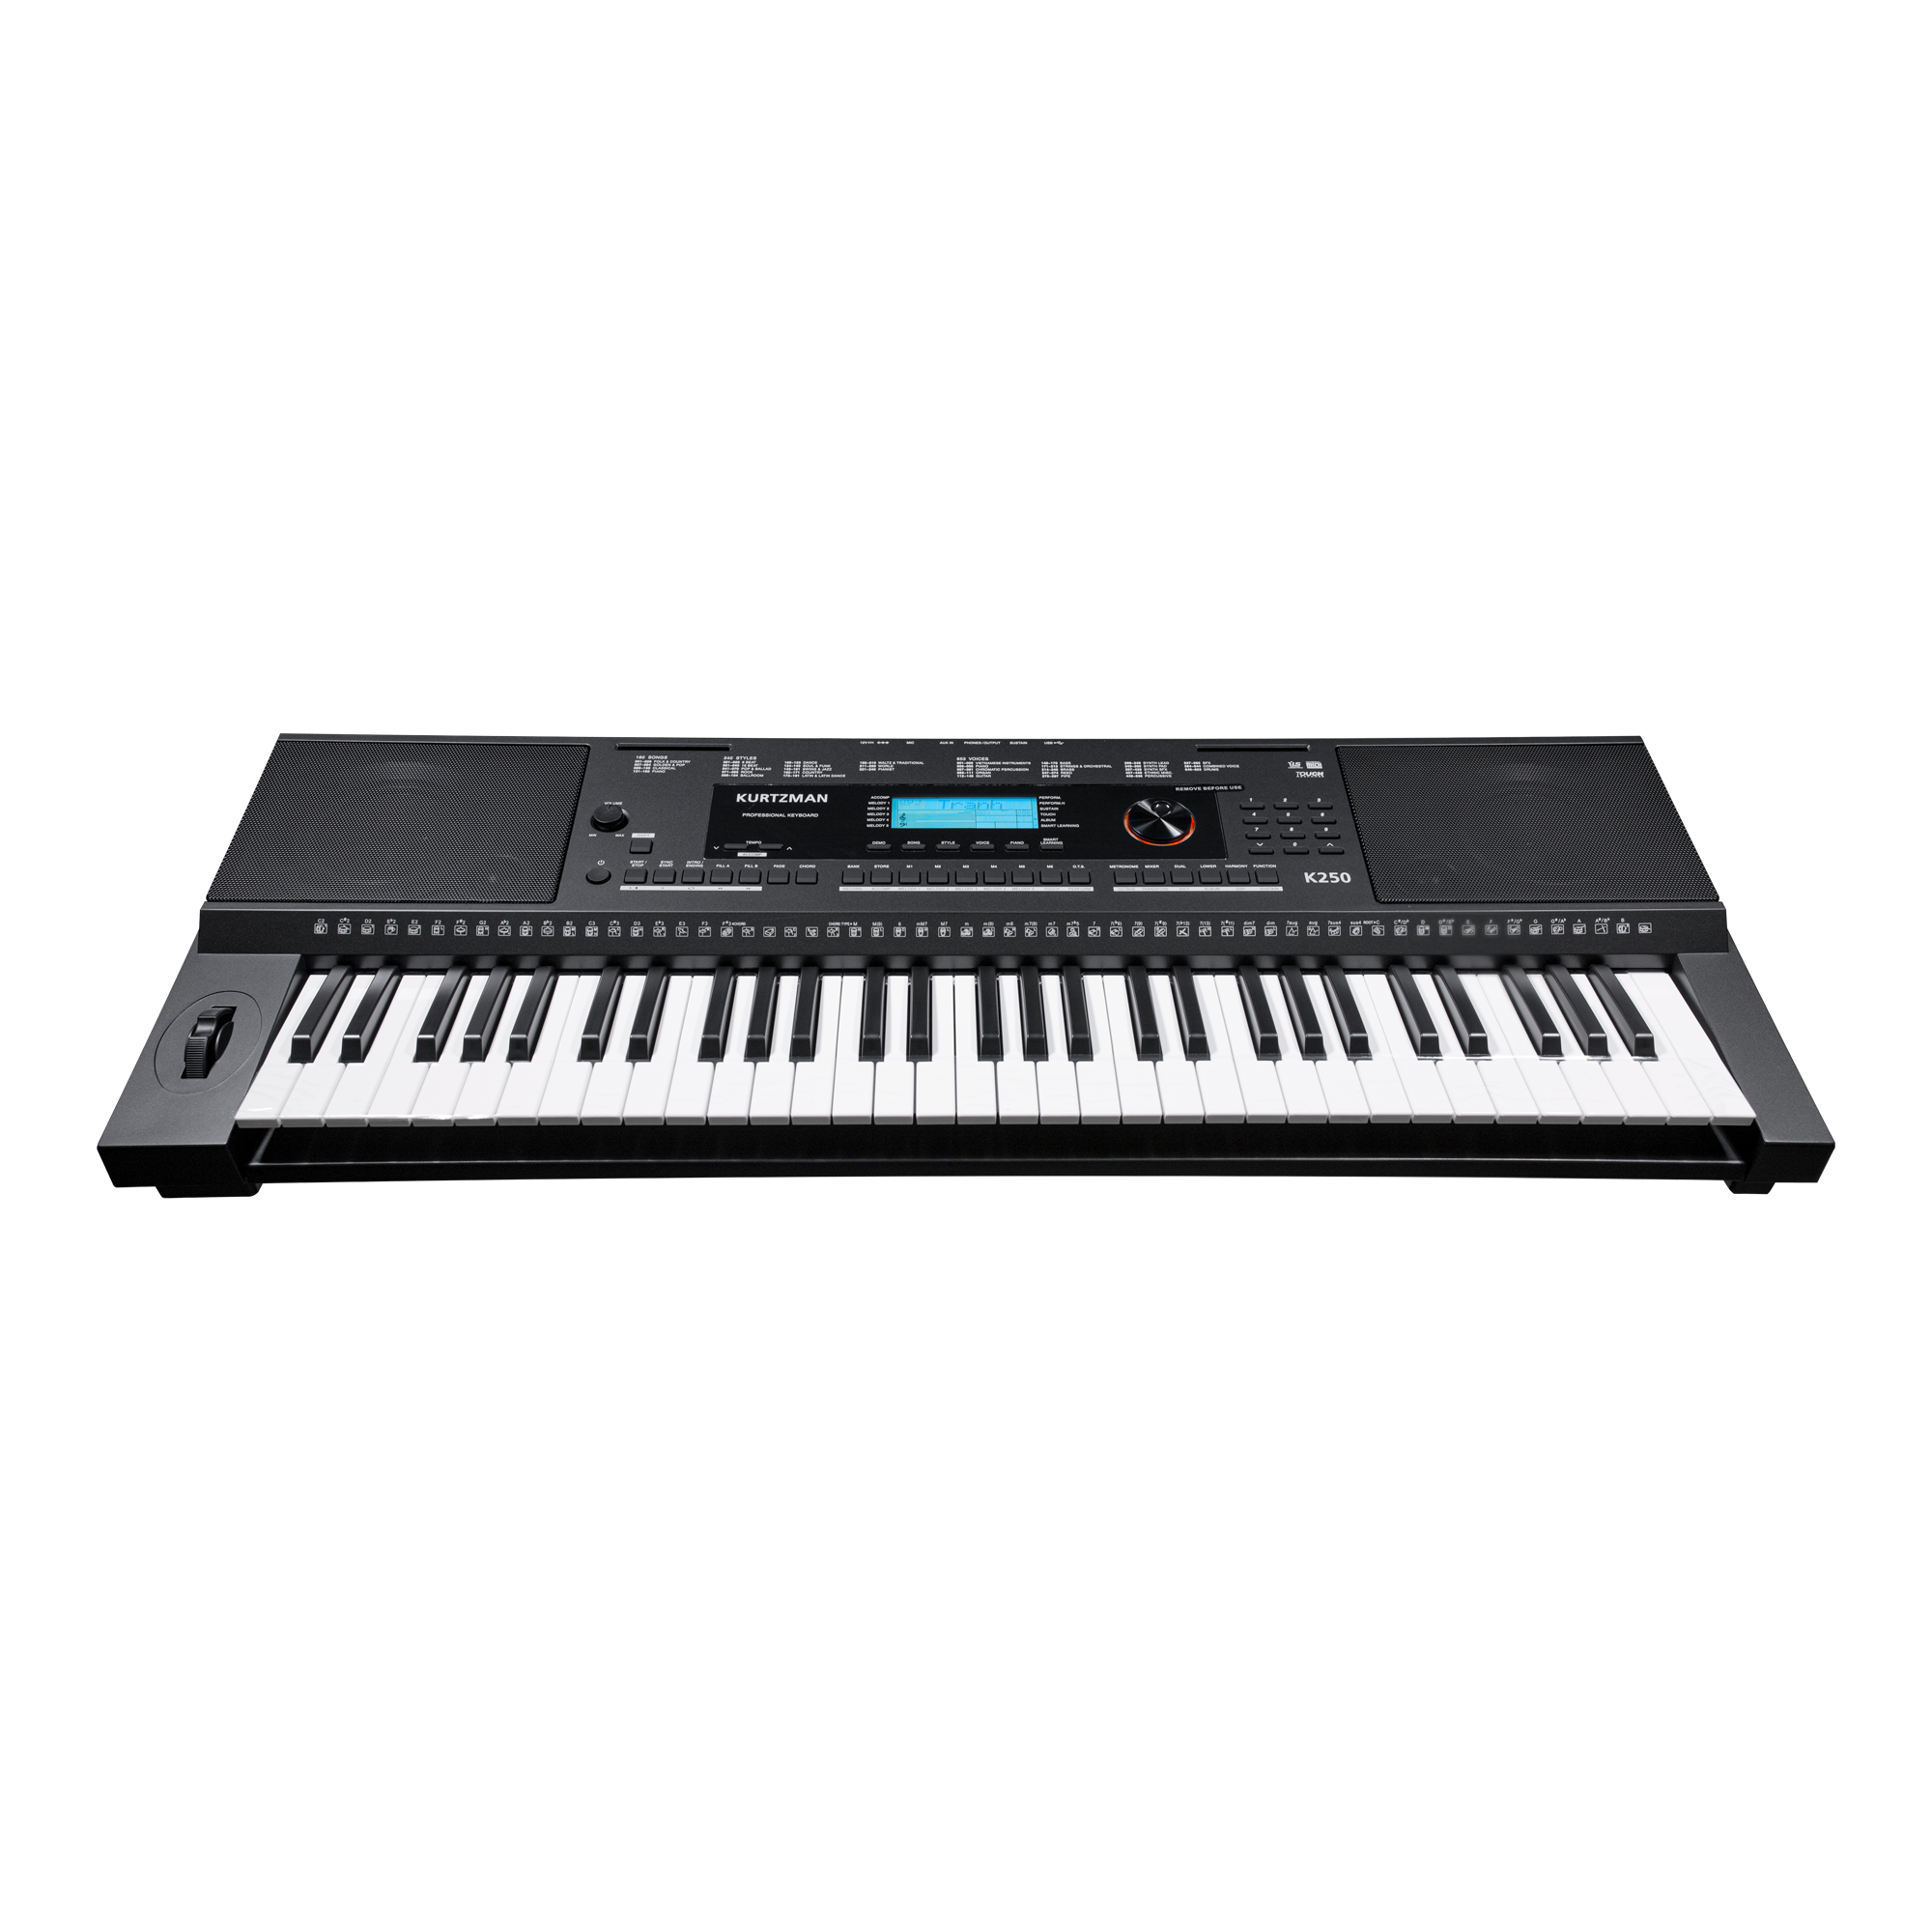 Đàn Organ điện tử/ Portable Keyboard - Kzm Kurtzman K250 - Perfect for Learning & Performing - Màu đen (BL) - Hàng chính hãng